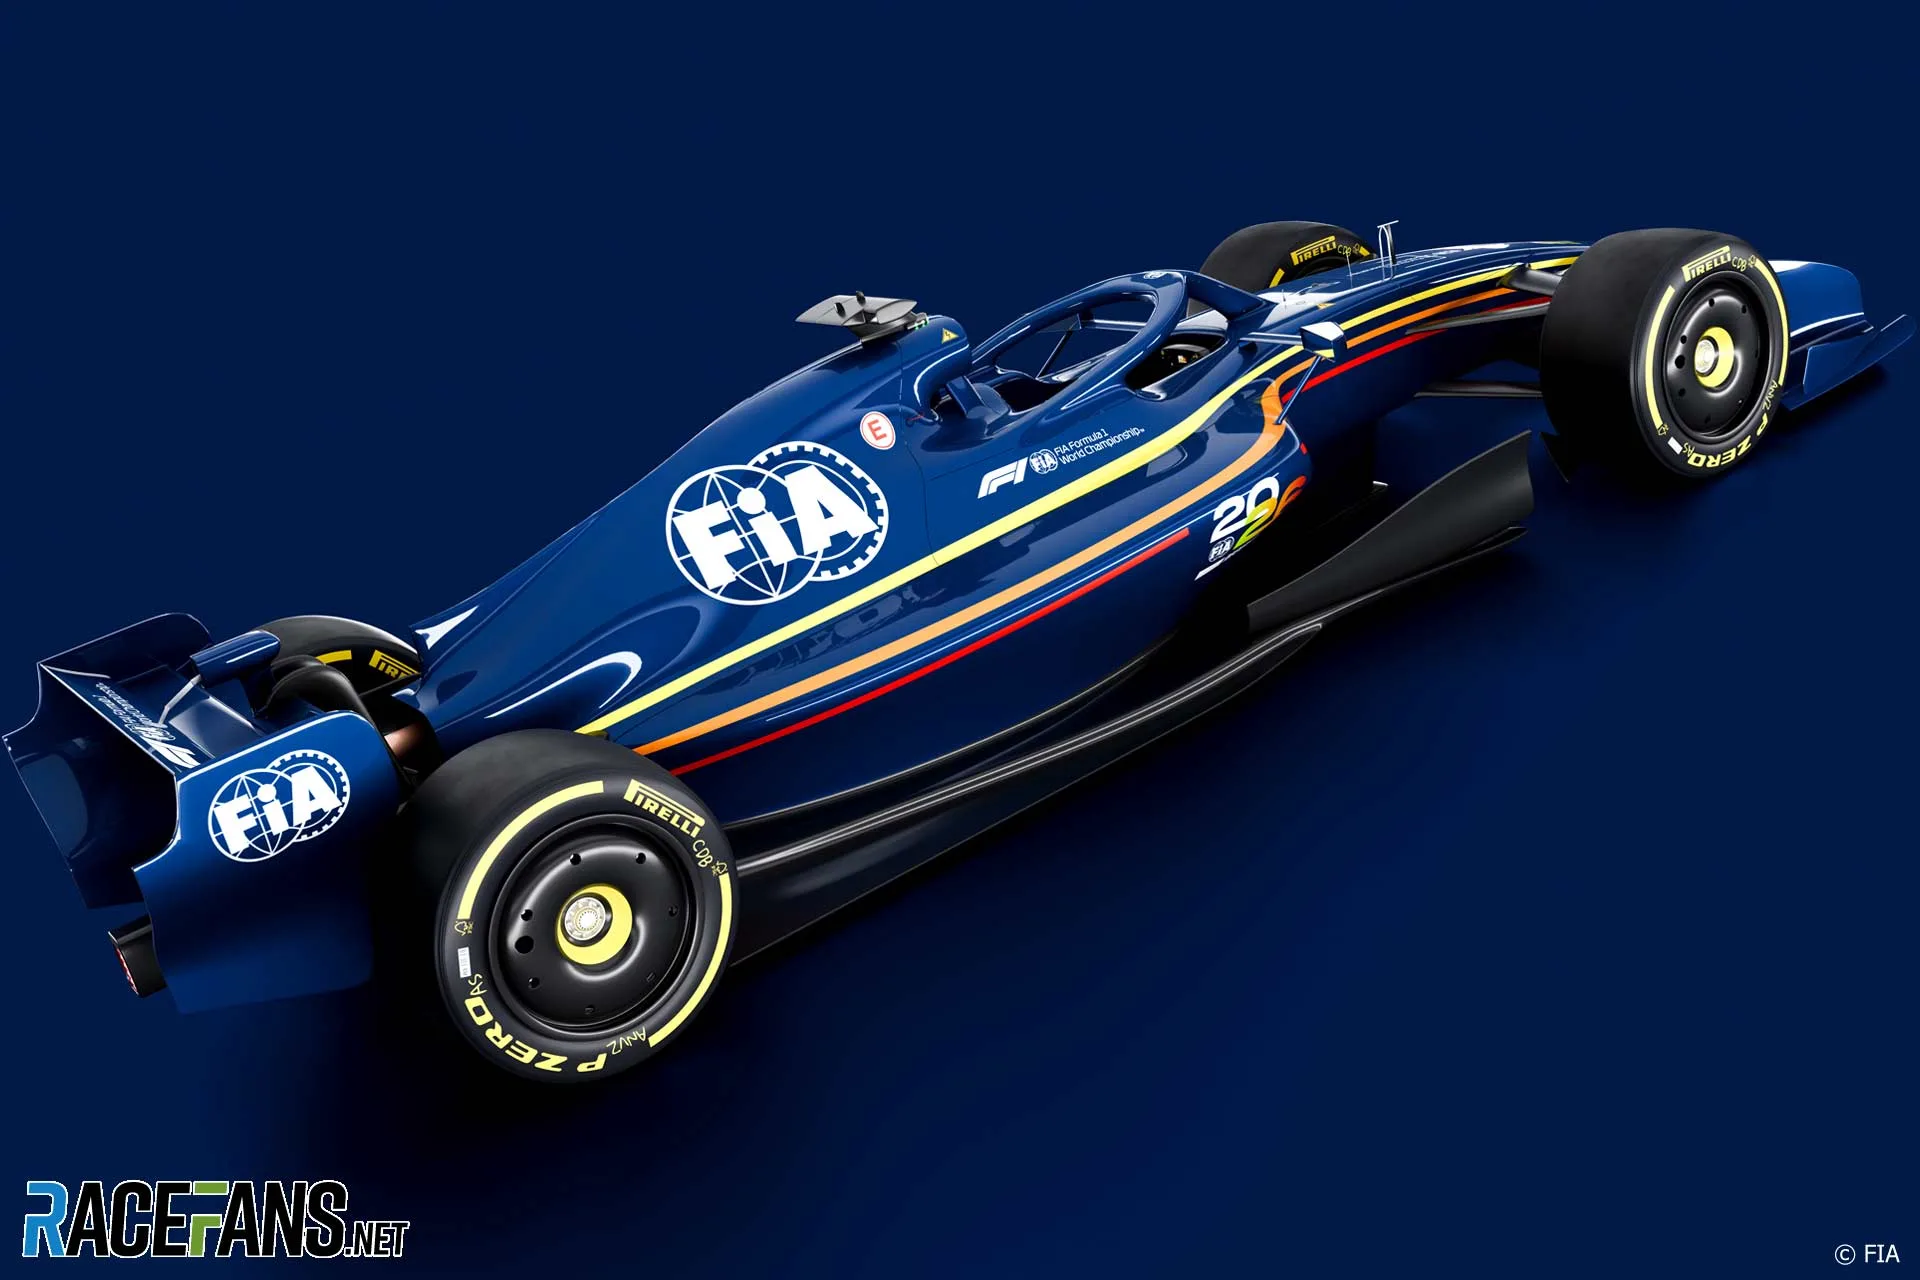 2026 F1 car rendering - rear side